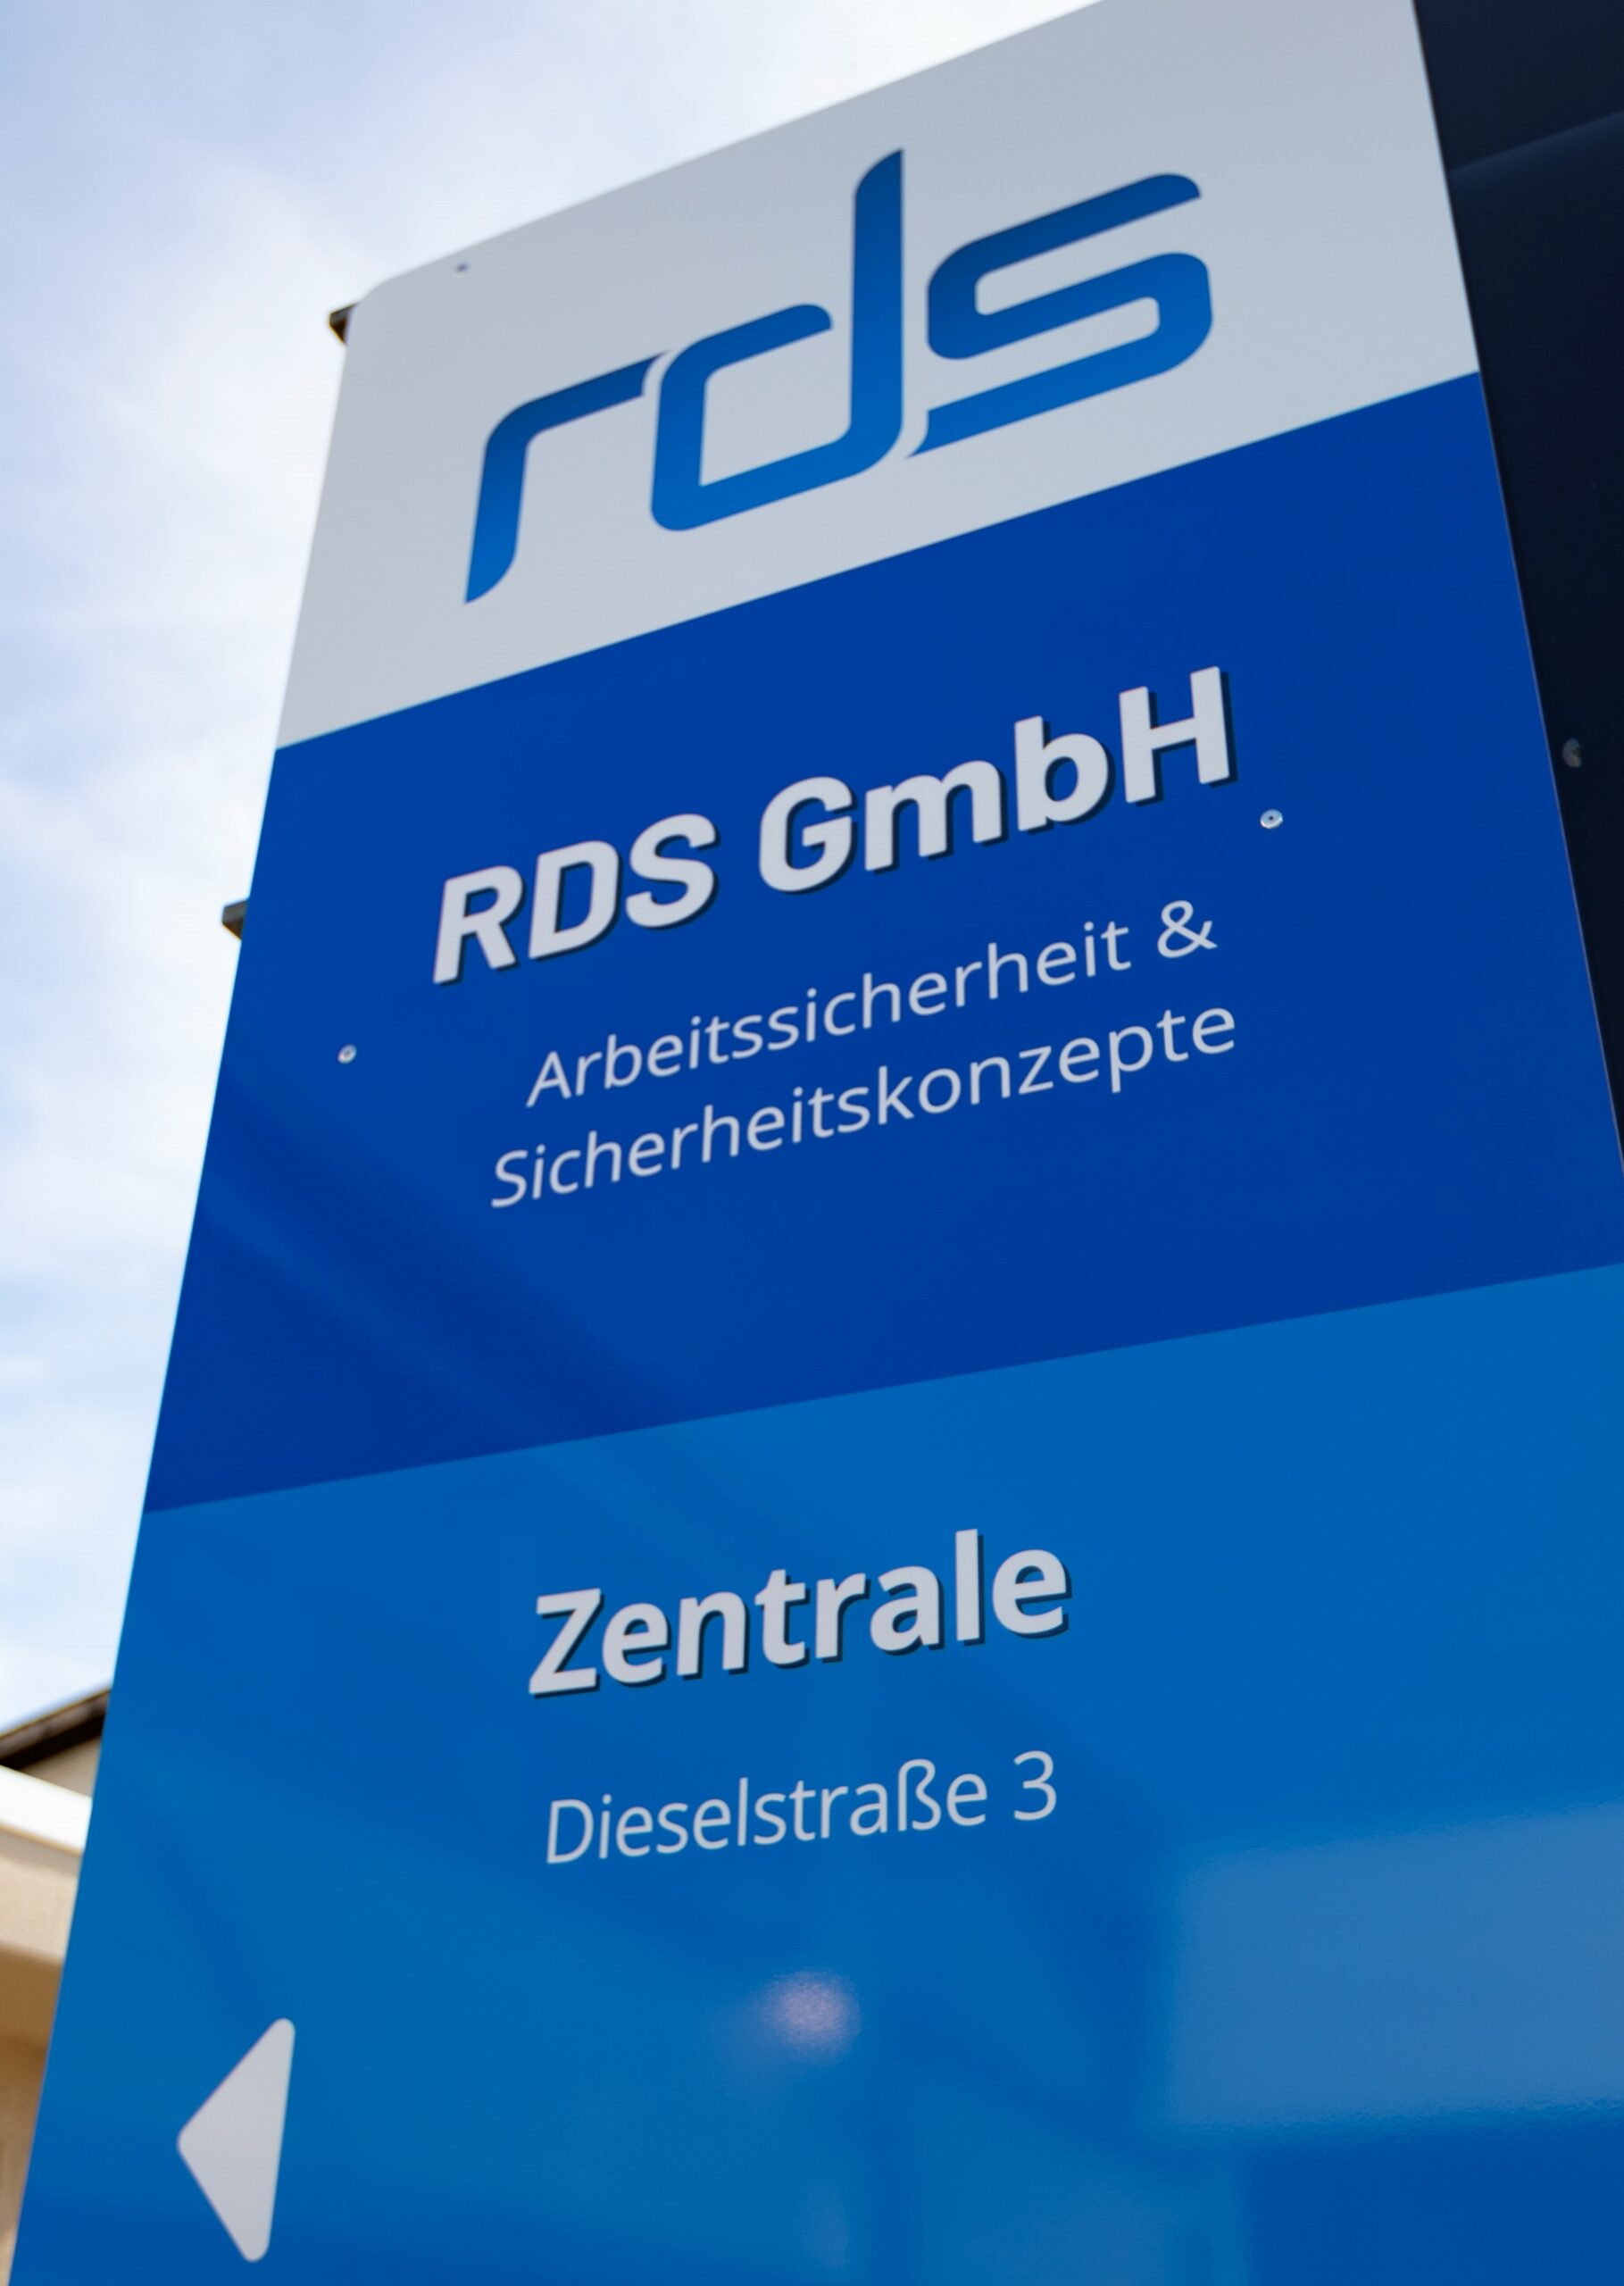 Prüfdienstleistr RDS GmbH